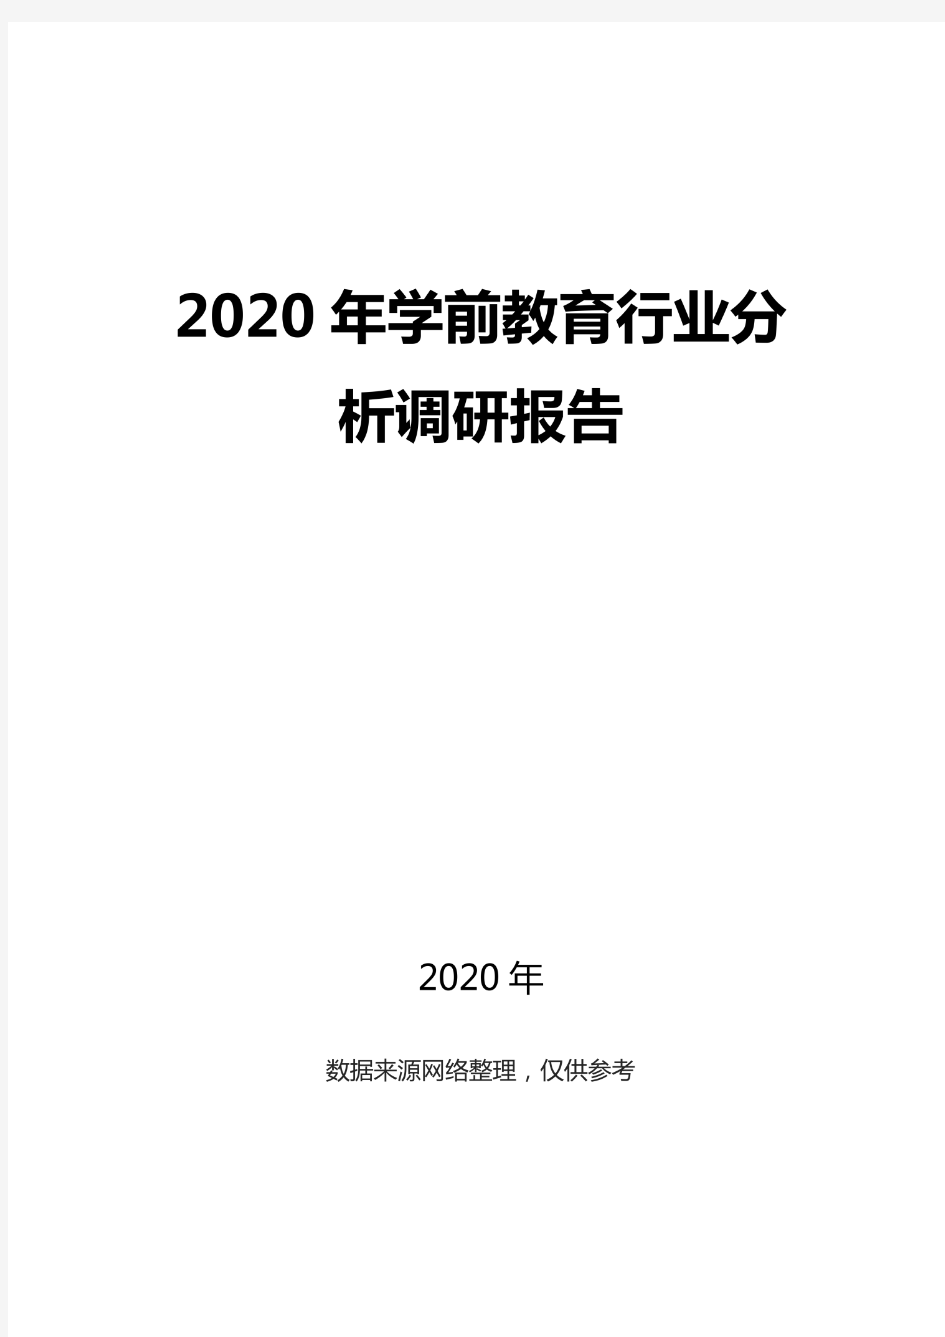 2020学前教育行业前景分析调研报告